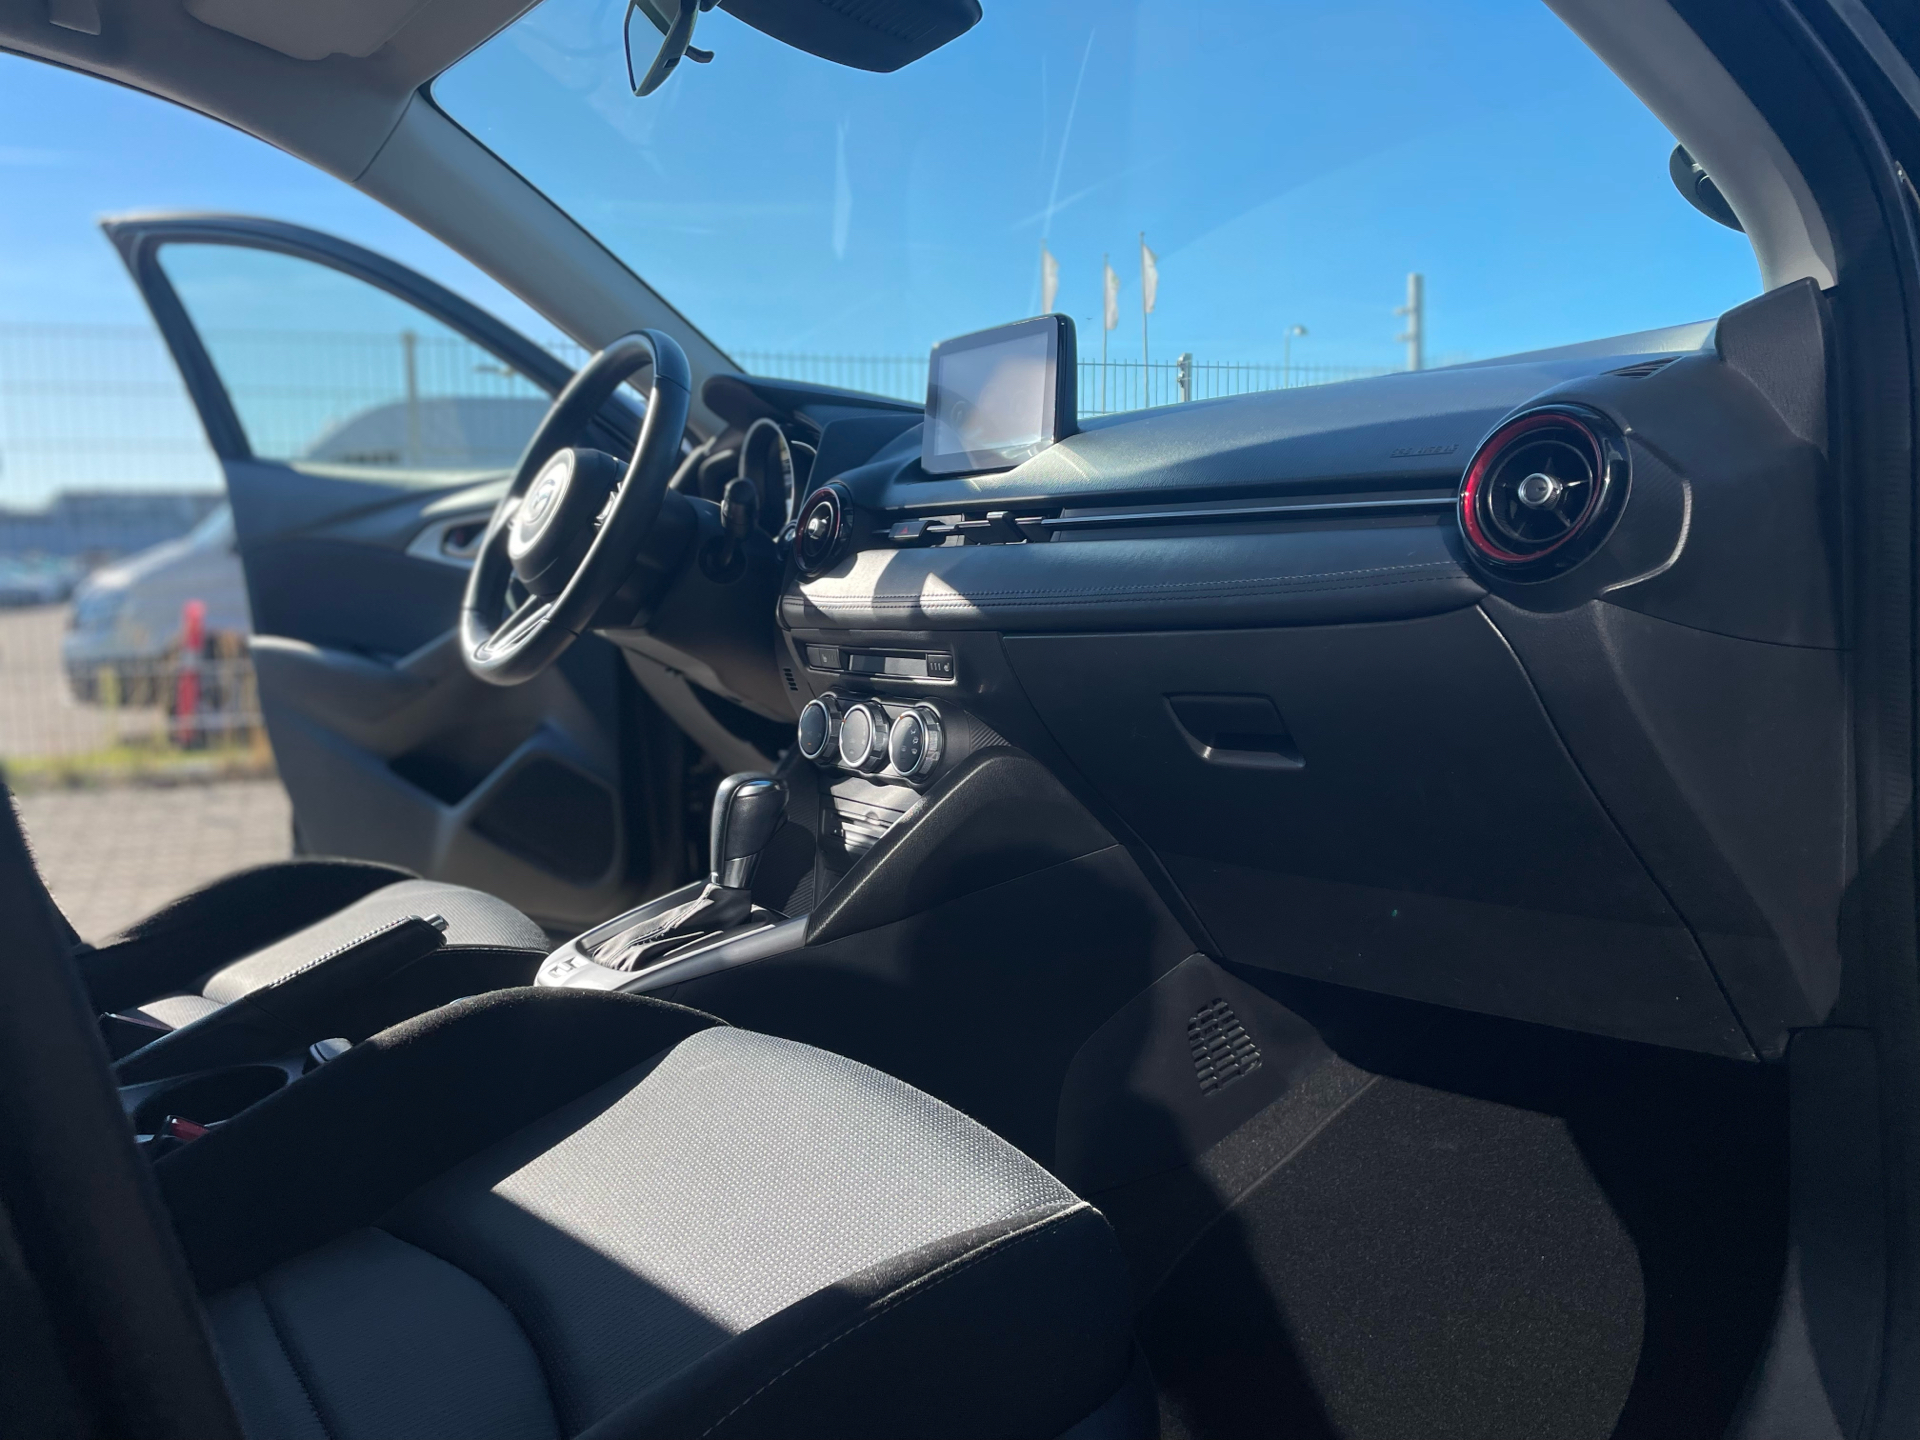 Billede af Mazda CX-3 2,0 Skyactiv-G Vision 120HK 5d 6g Aut.